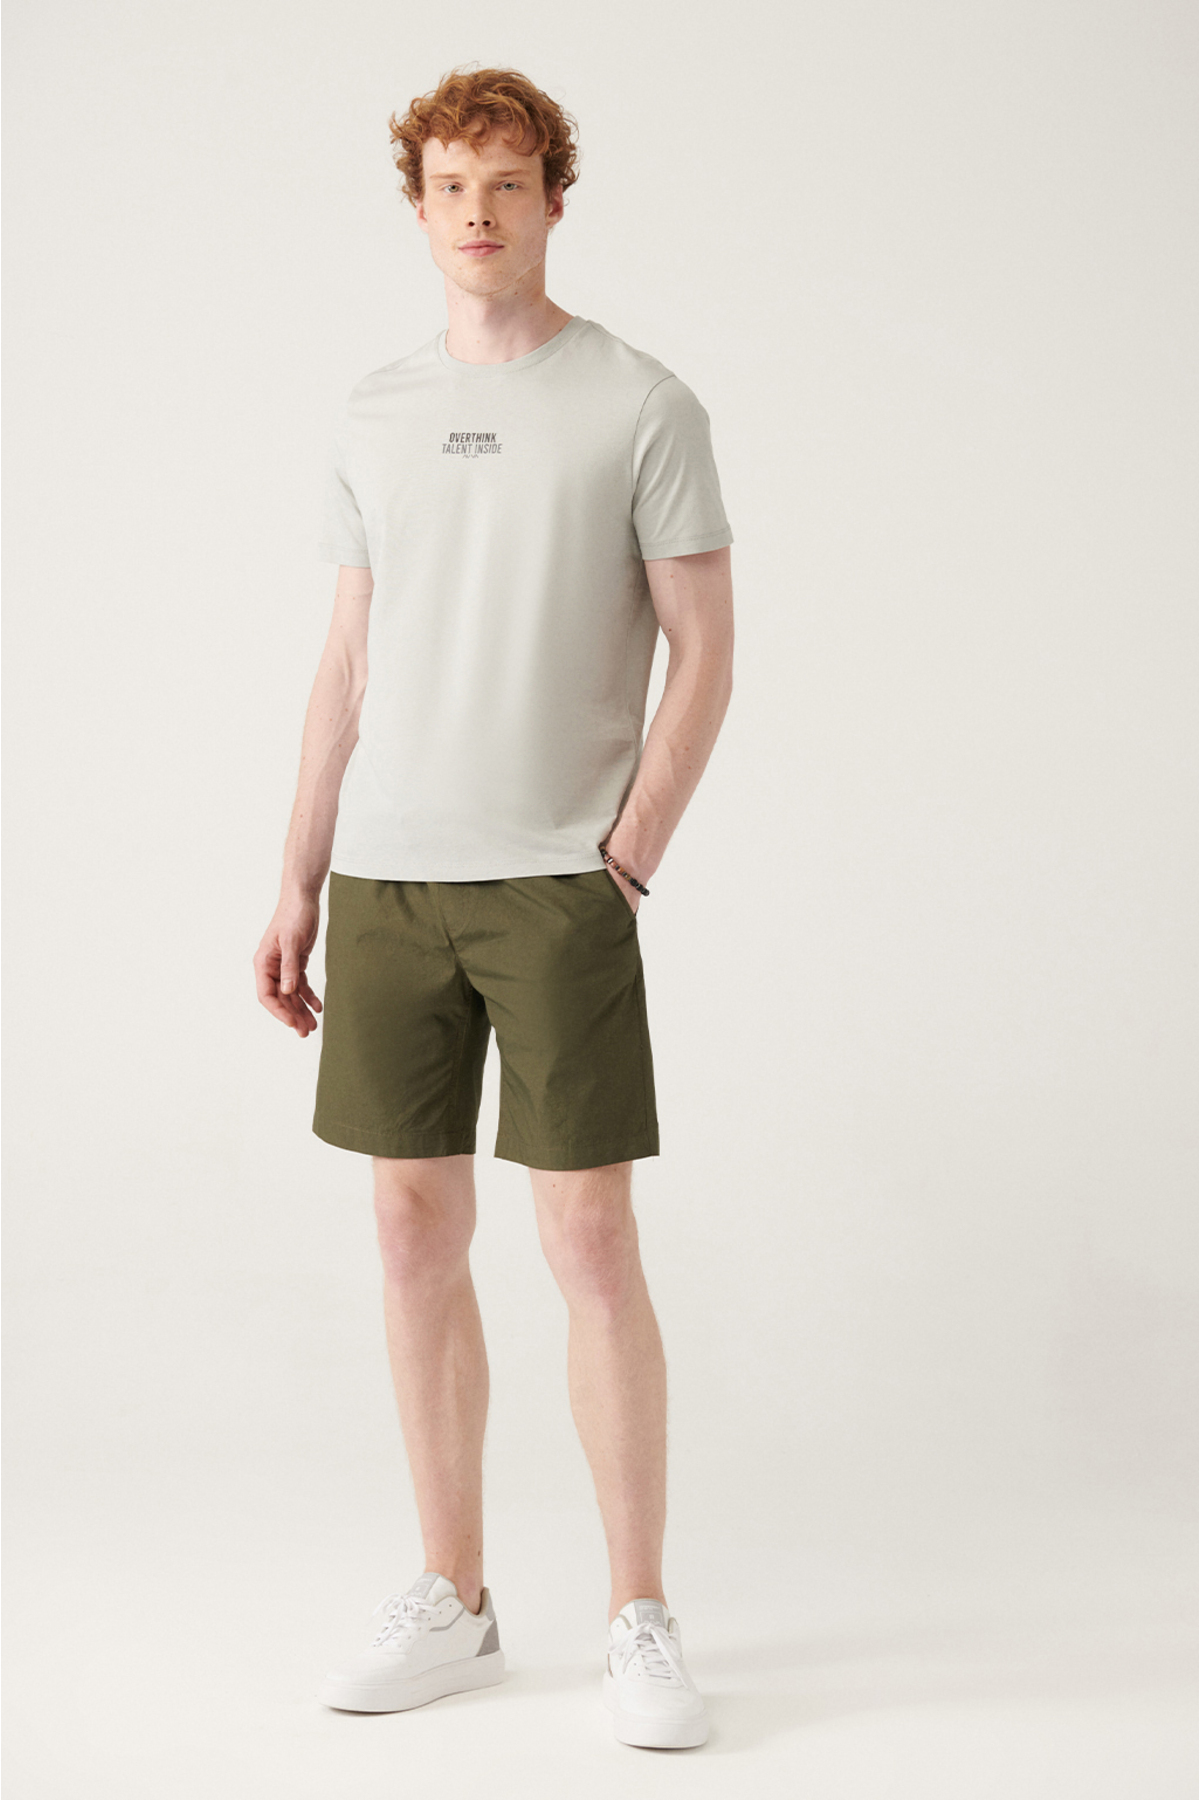 Avva Men's Khaki Stretchy Waisted Relaxed Fit Shorts